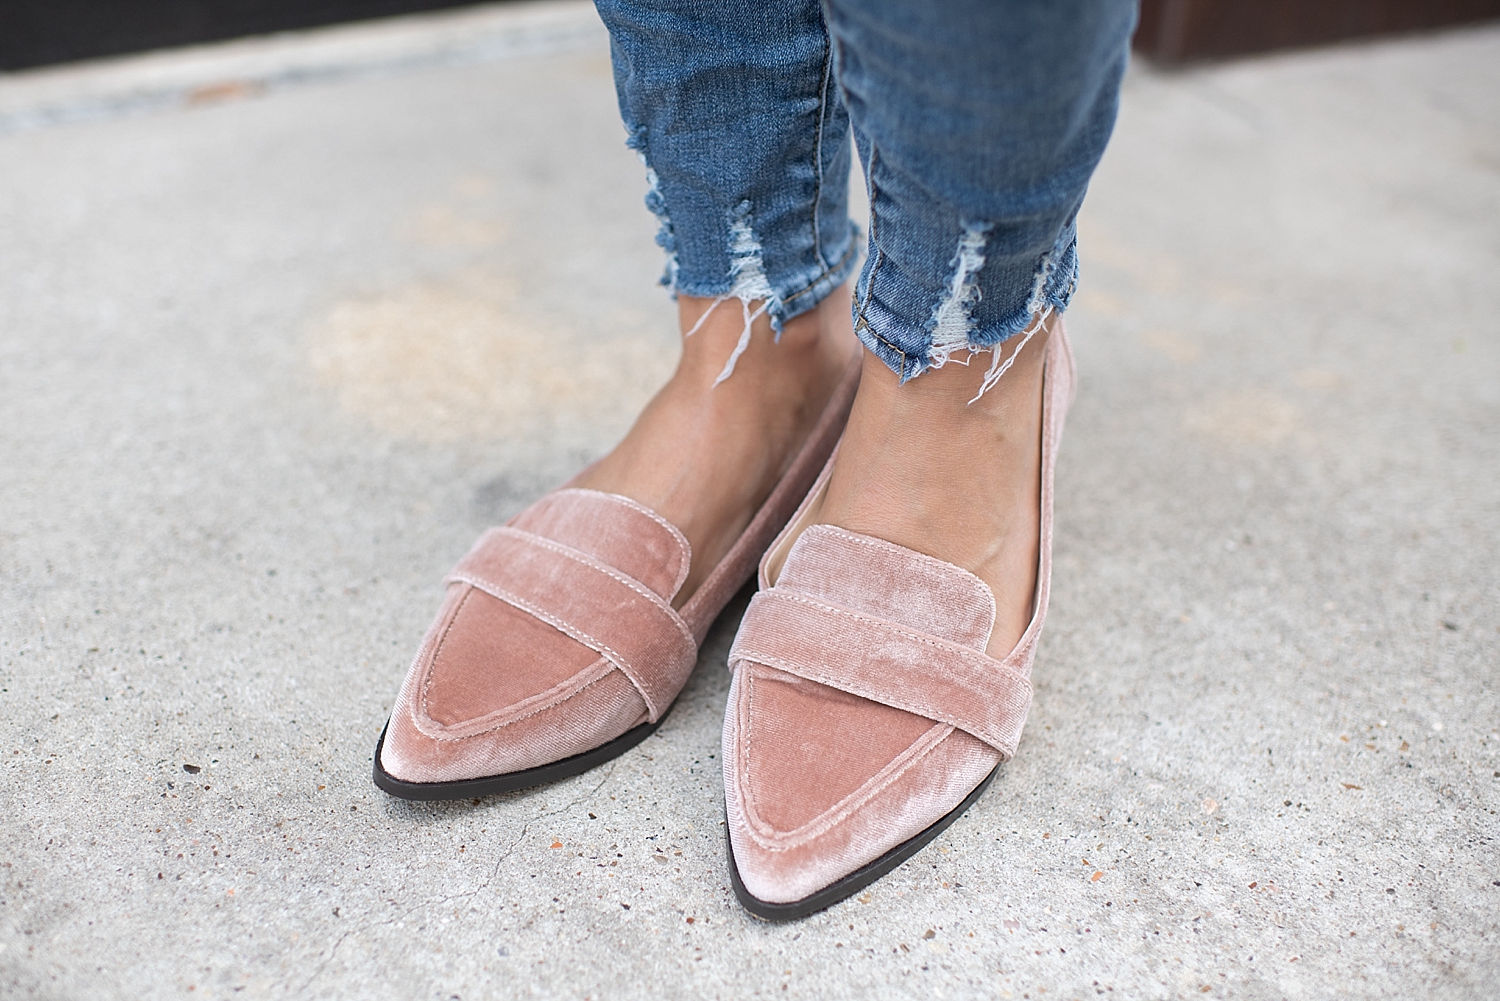 Sole Society velvet loafers styled by popular Houston fashion blogger, Fancy Ashley